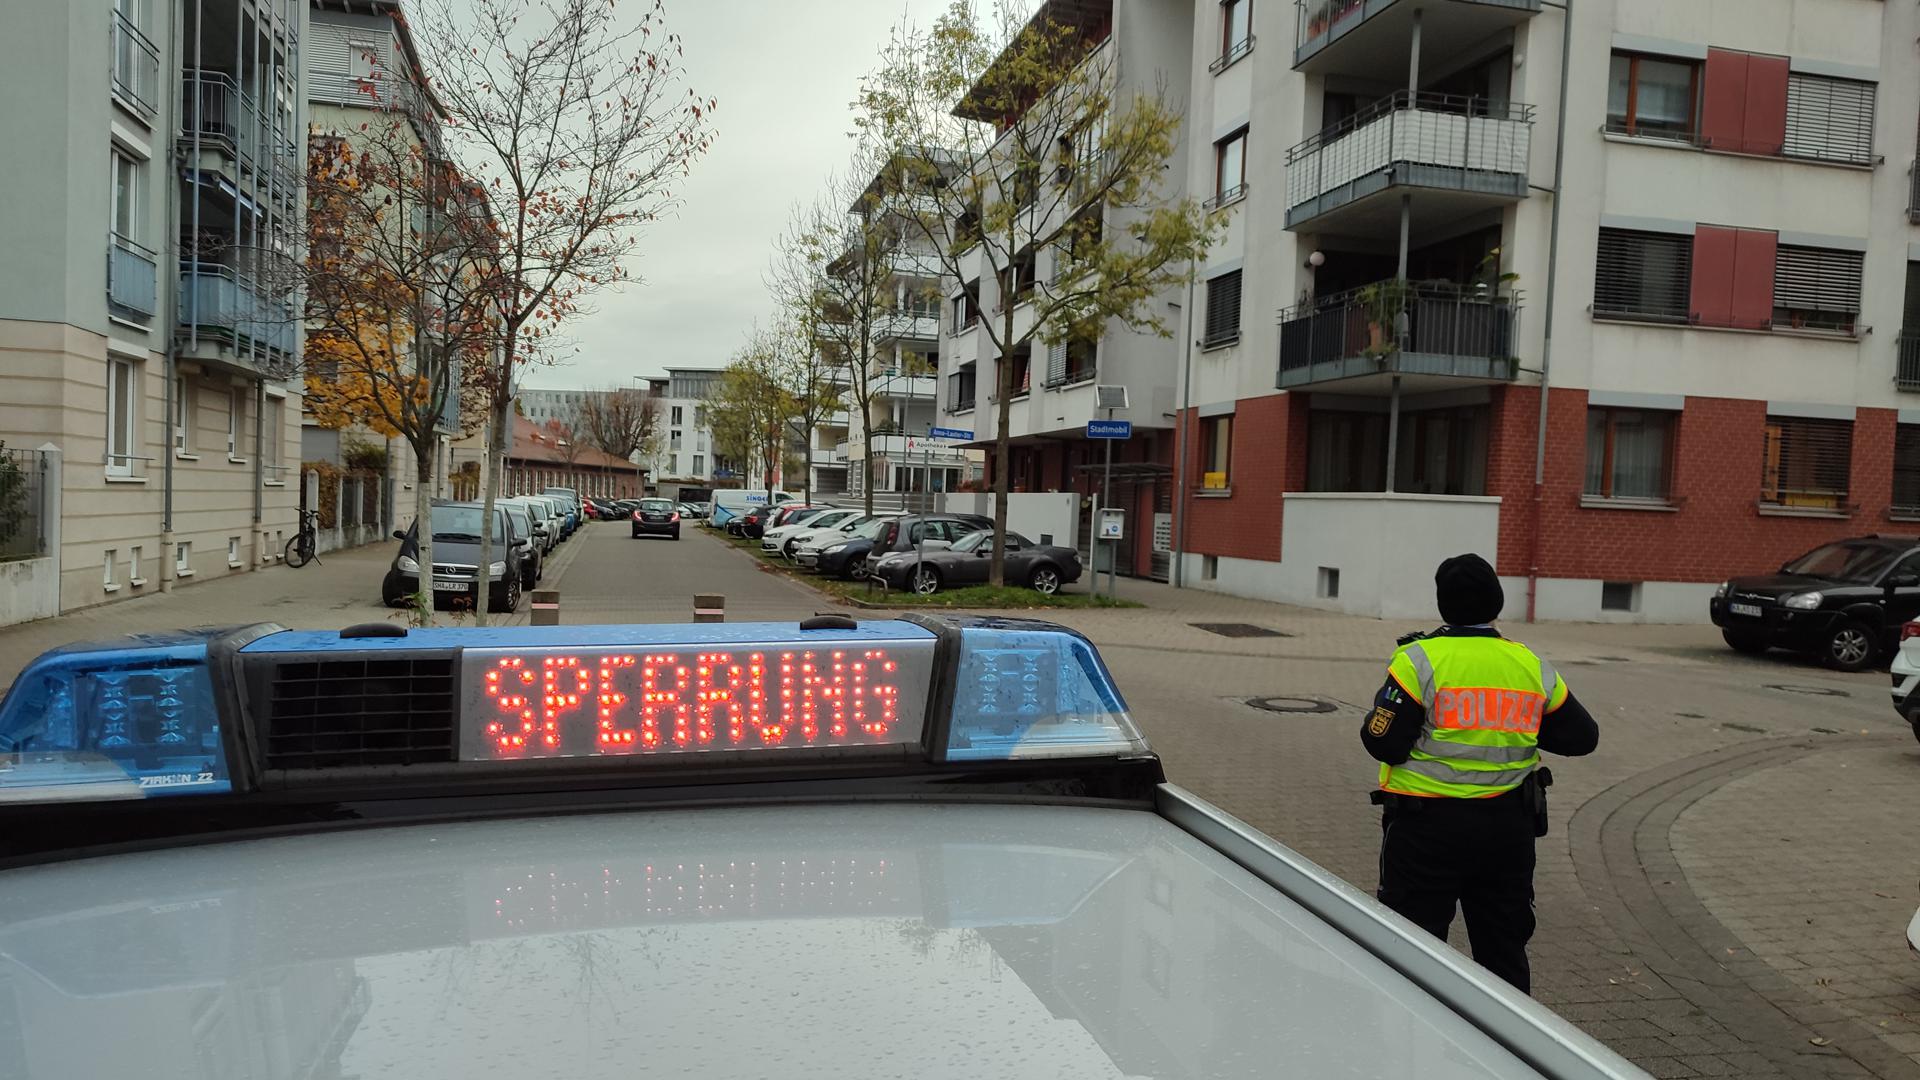 Bombenfund in Karlsruhe: Am Dienstag führt die Polizei in der Südstadt Evakuierungsmaßnahmen und Sperrungen durch